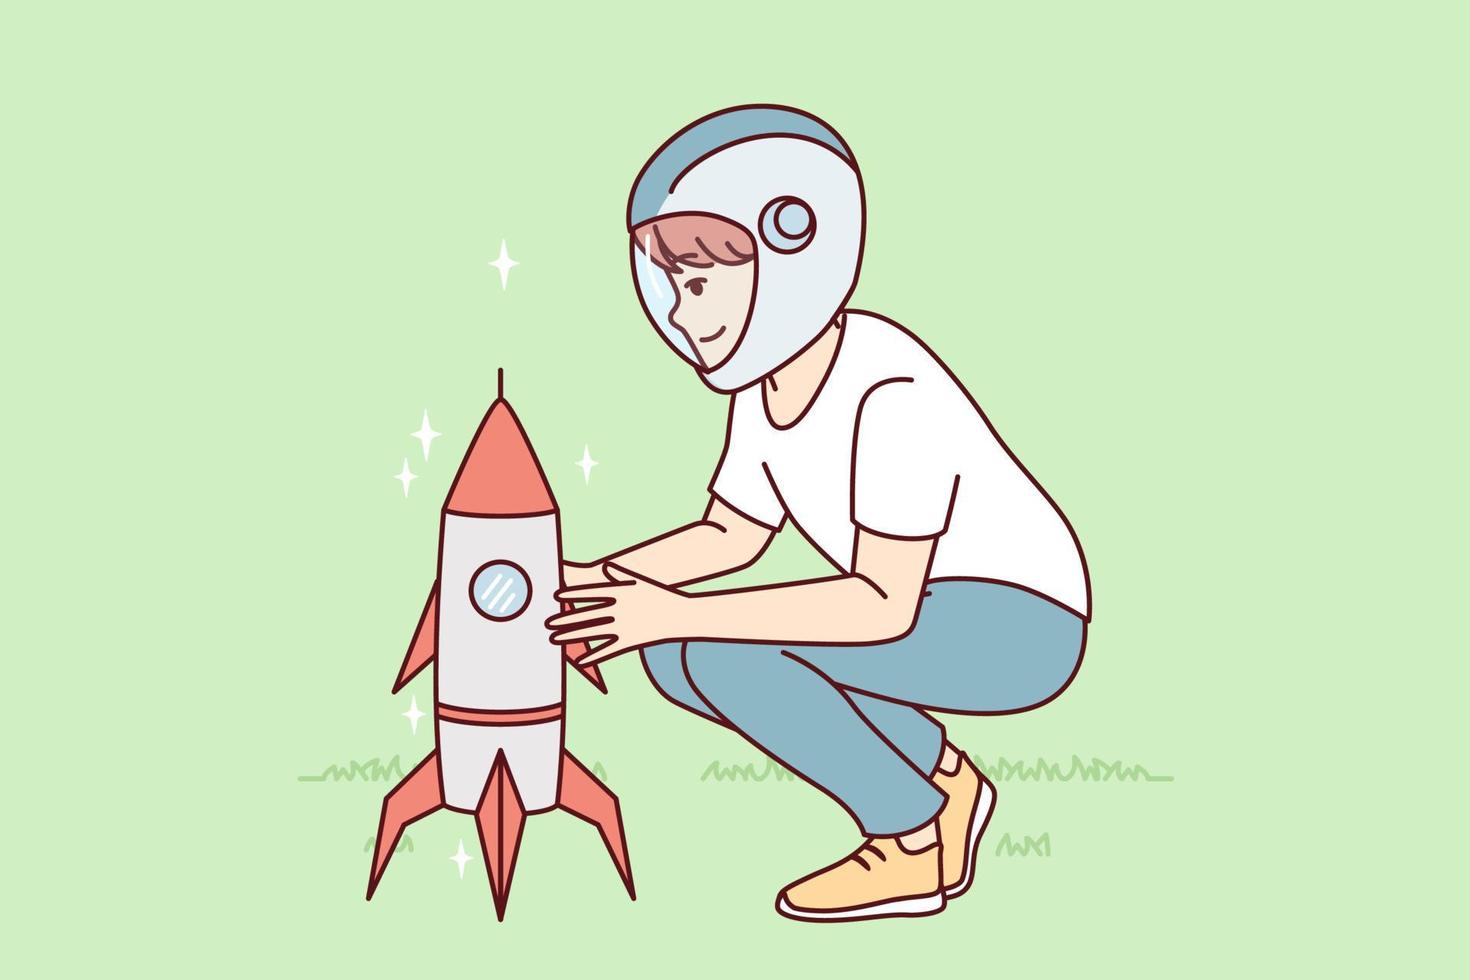 kleiner Junge, der in der Nähe einer Spielzeugrakete hockt, die den Start eines Raumschiffs zu einem anderen Planeten darstellt. Kind spielt als Astronaut, will in der Weltraumindustrie arbeiten und intergalaktische Schiffe starten. flaches Vektordesign vektor